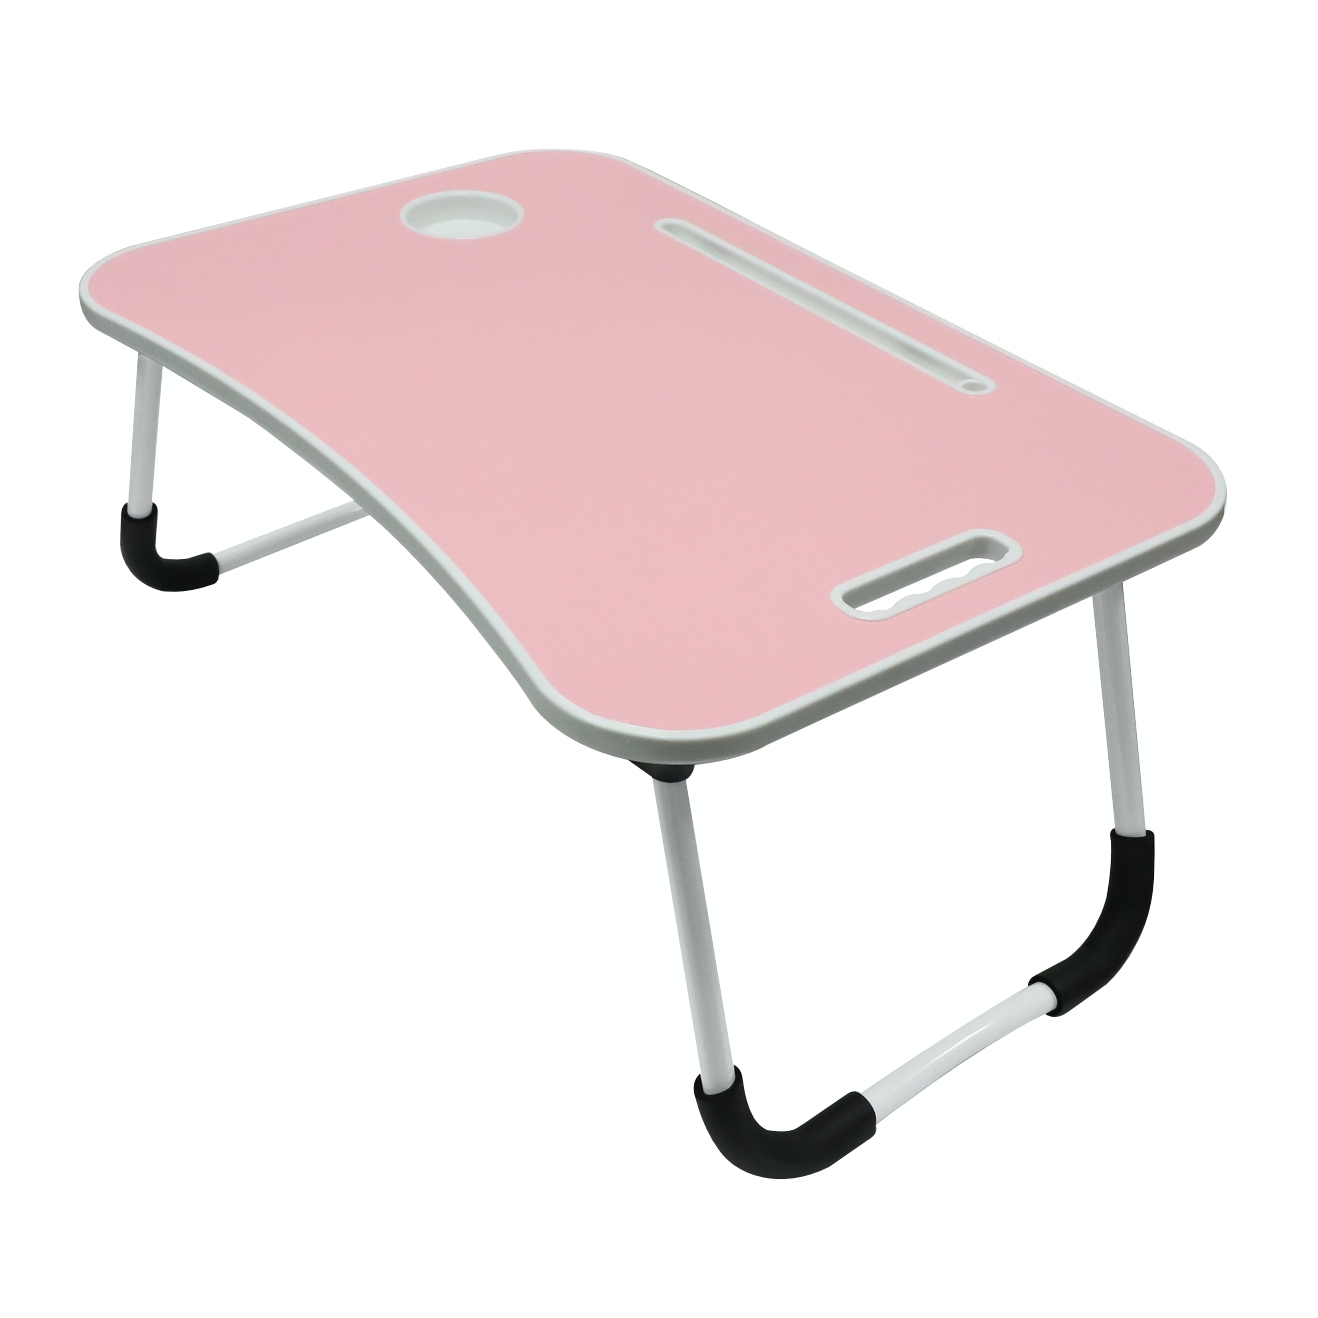 Masa pentru laptop Nolito, plianta, roz, 60 x 40 x 27 cm